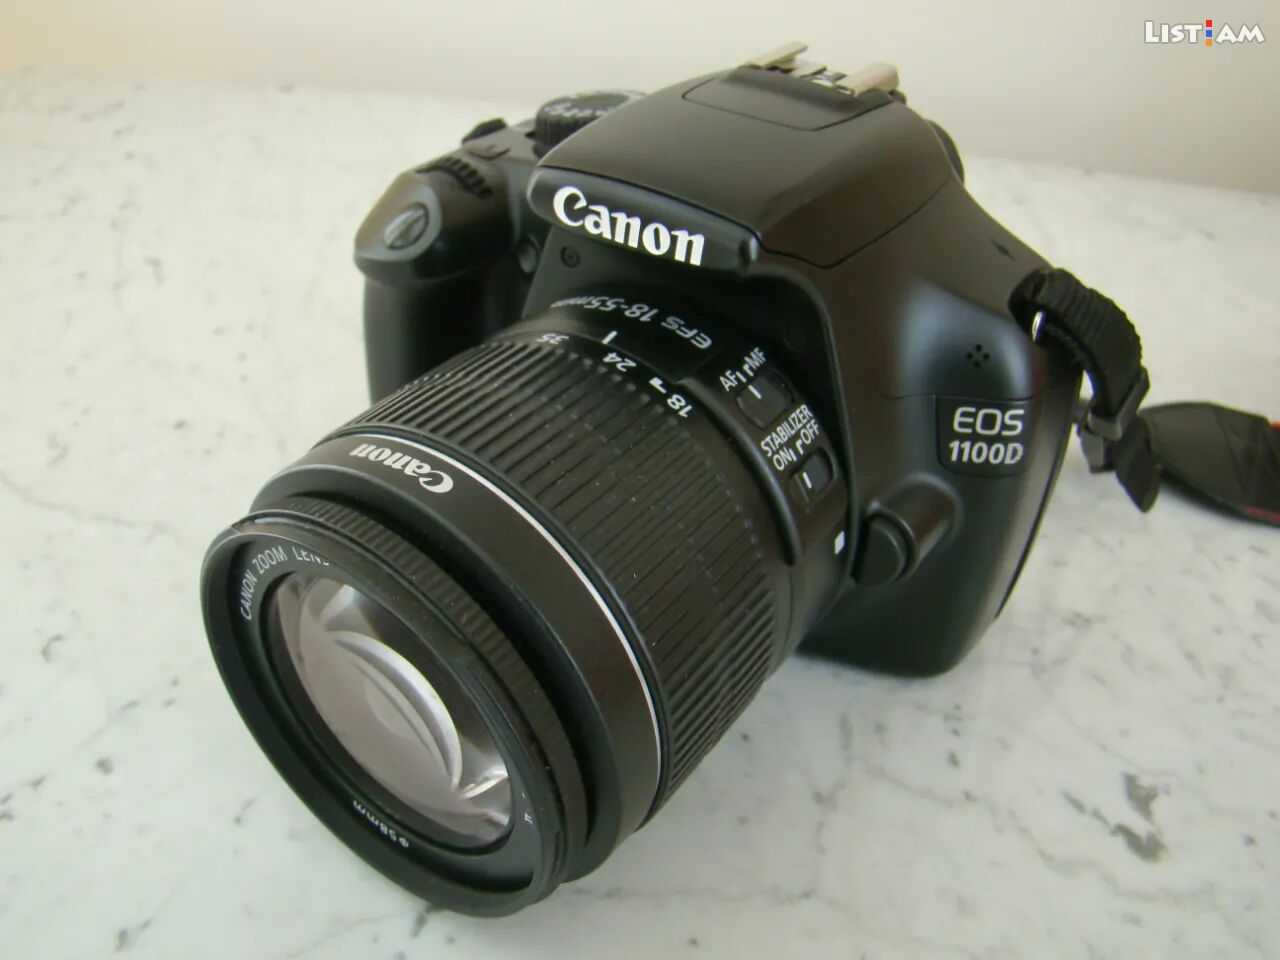 Canon 1100 D